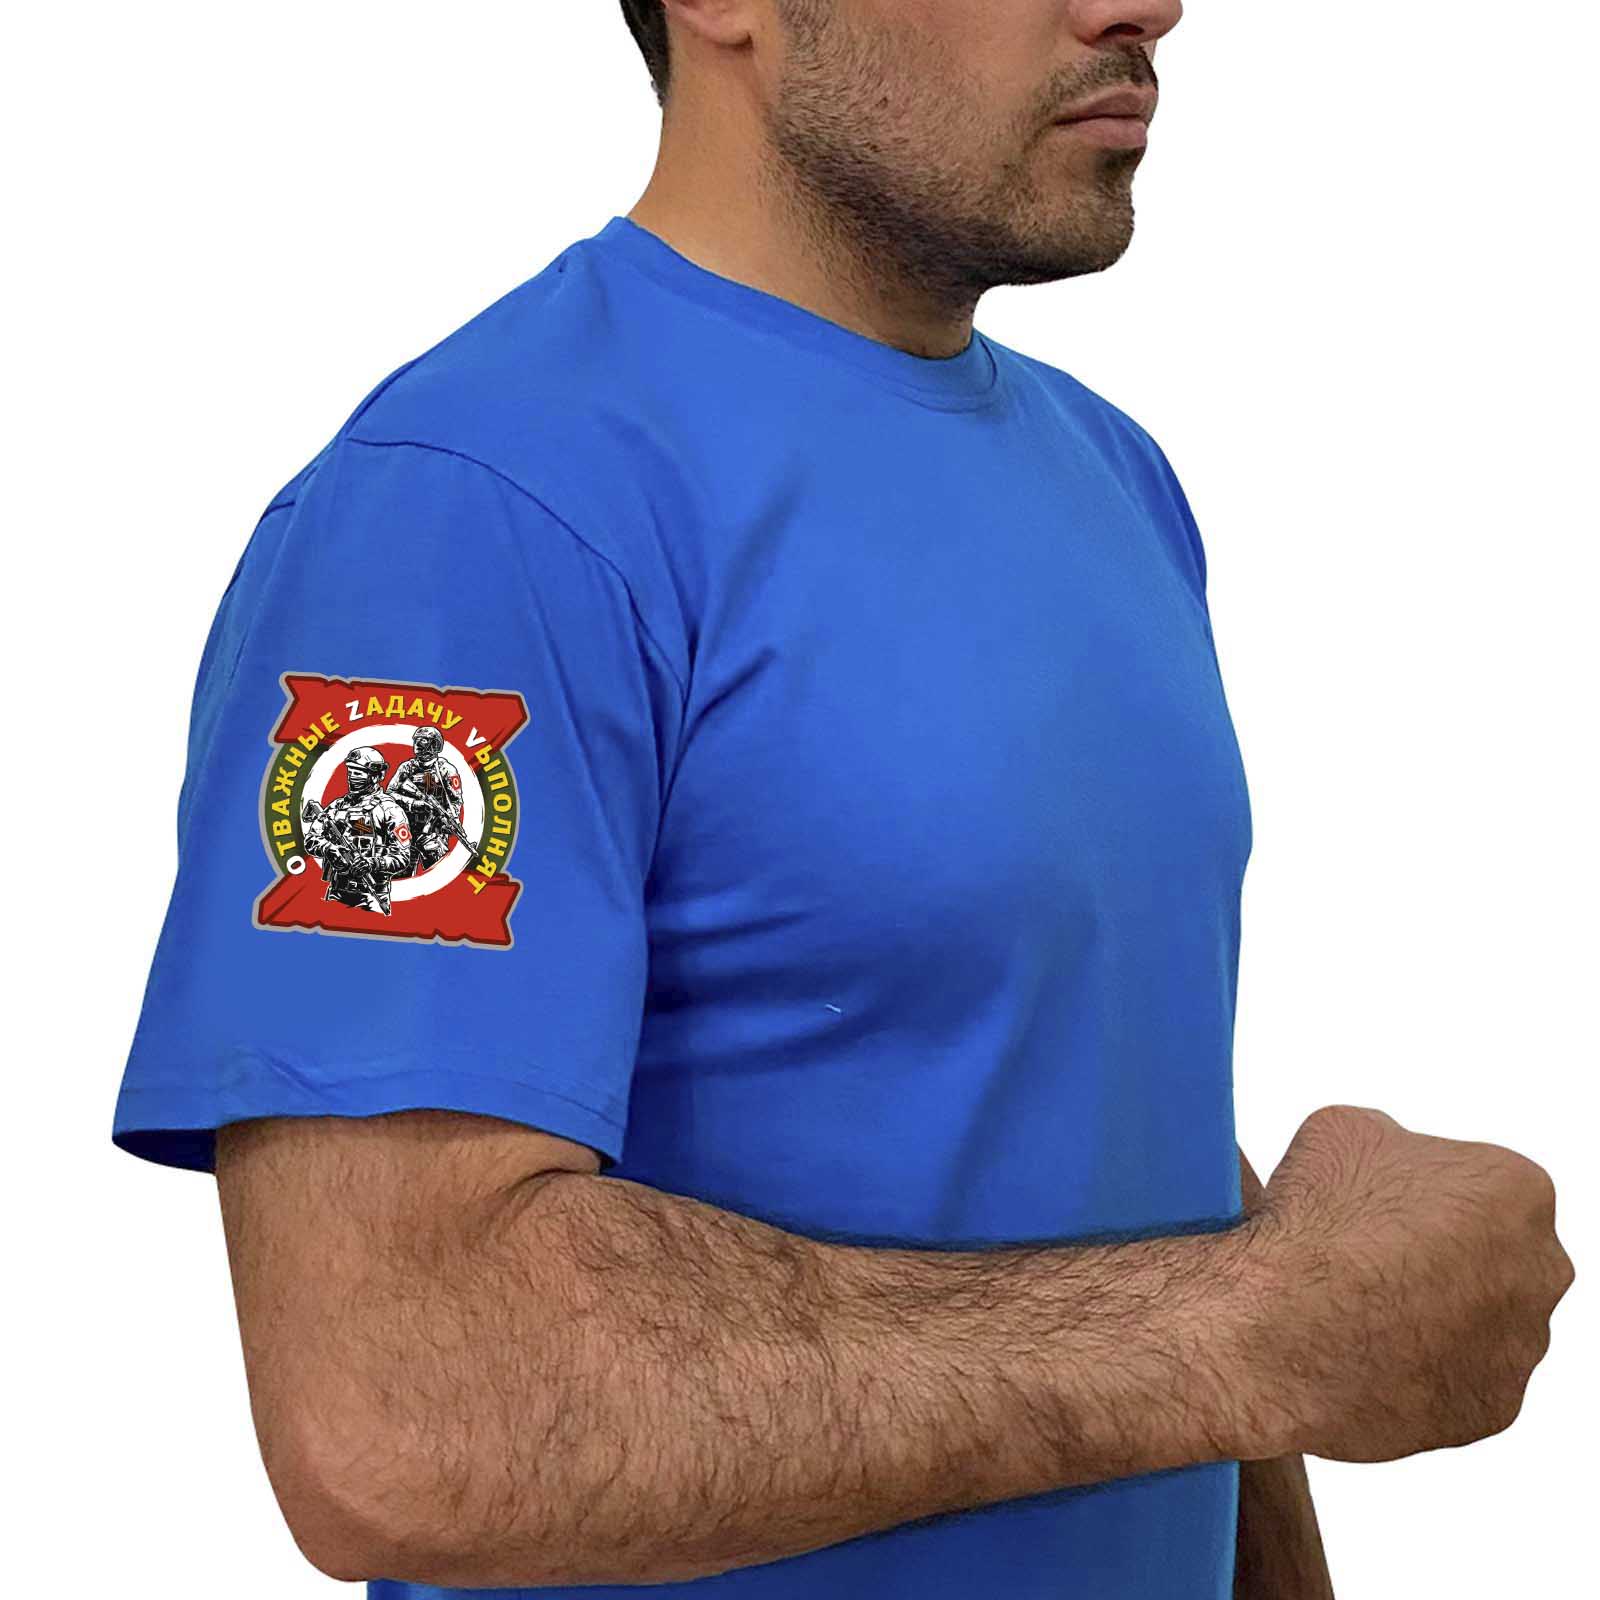 Васильковая футболка с термотрансфером "Отважные Zадачу Vыполнят" на рукаве